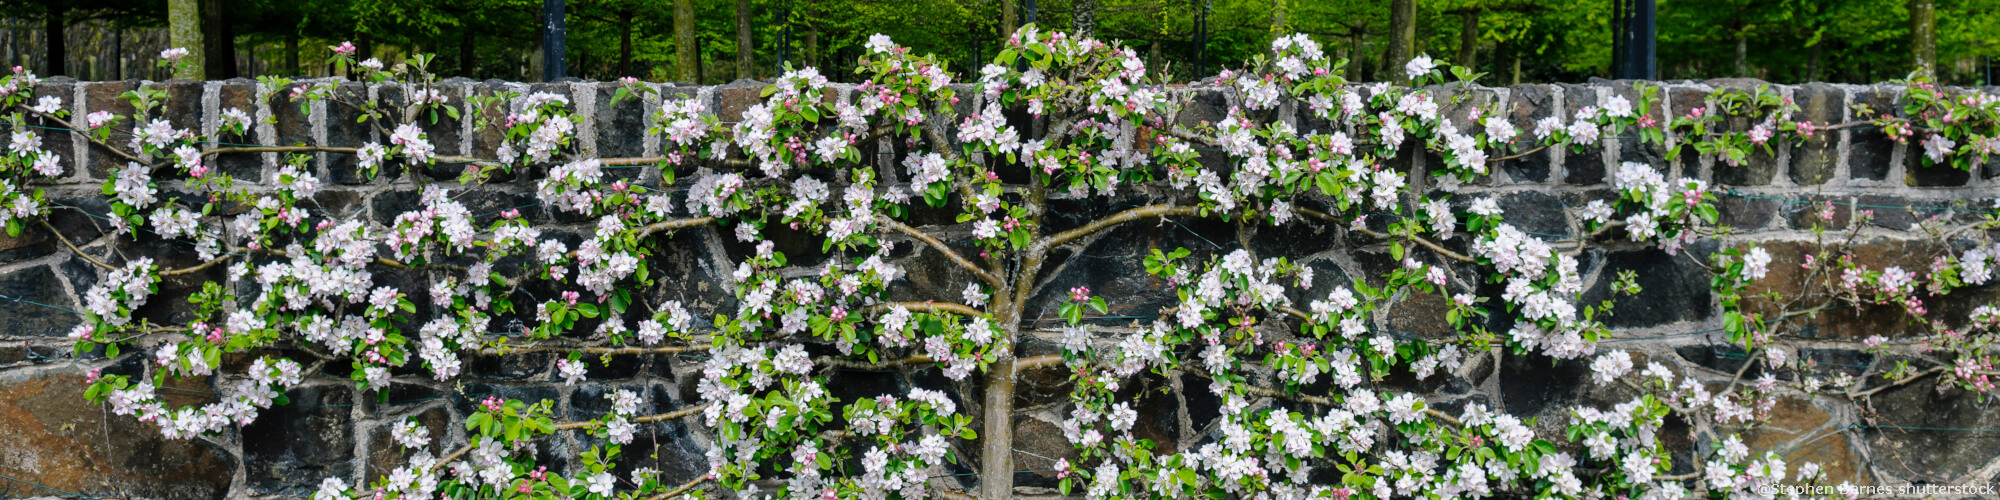 Spalierobst: Schnittverträgliche Obstbäume in großer Formenvielfalt